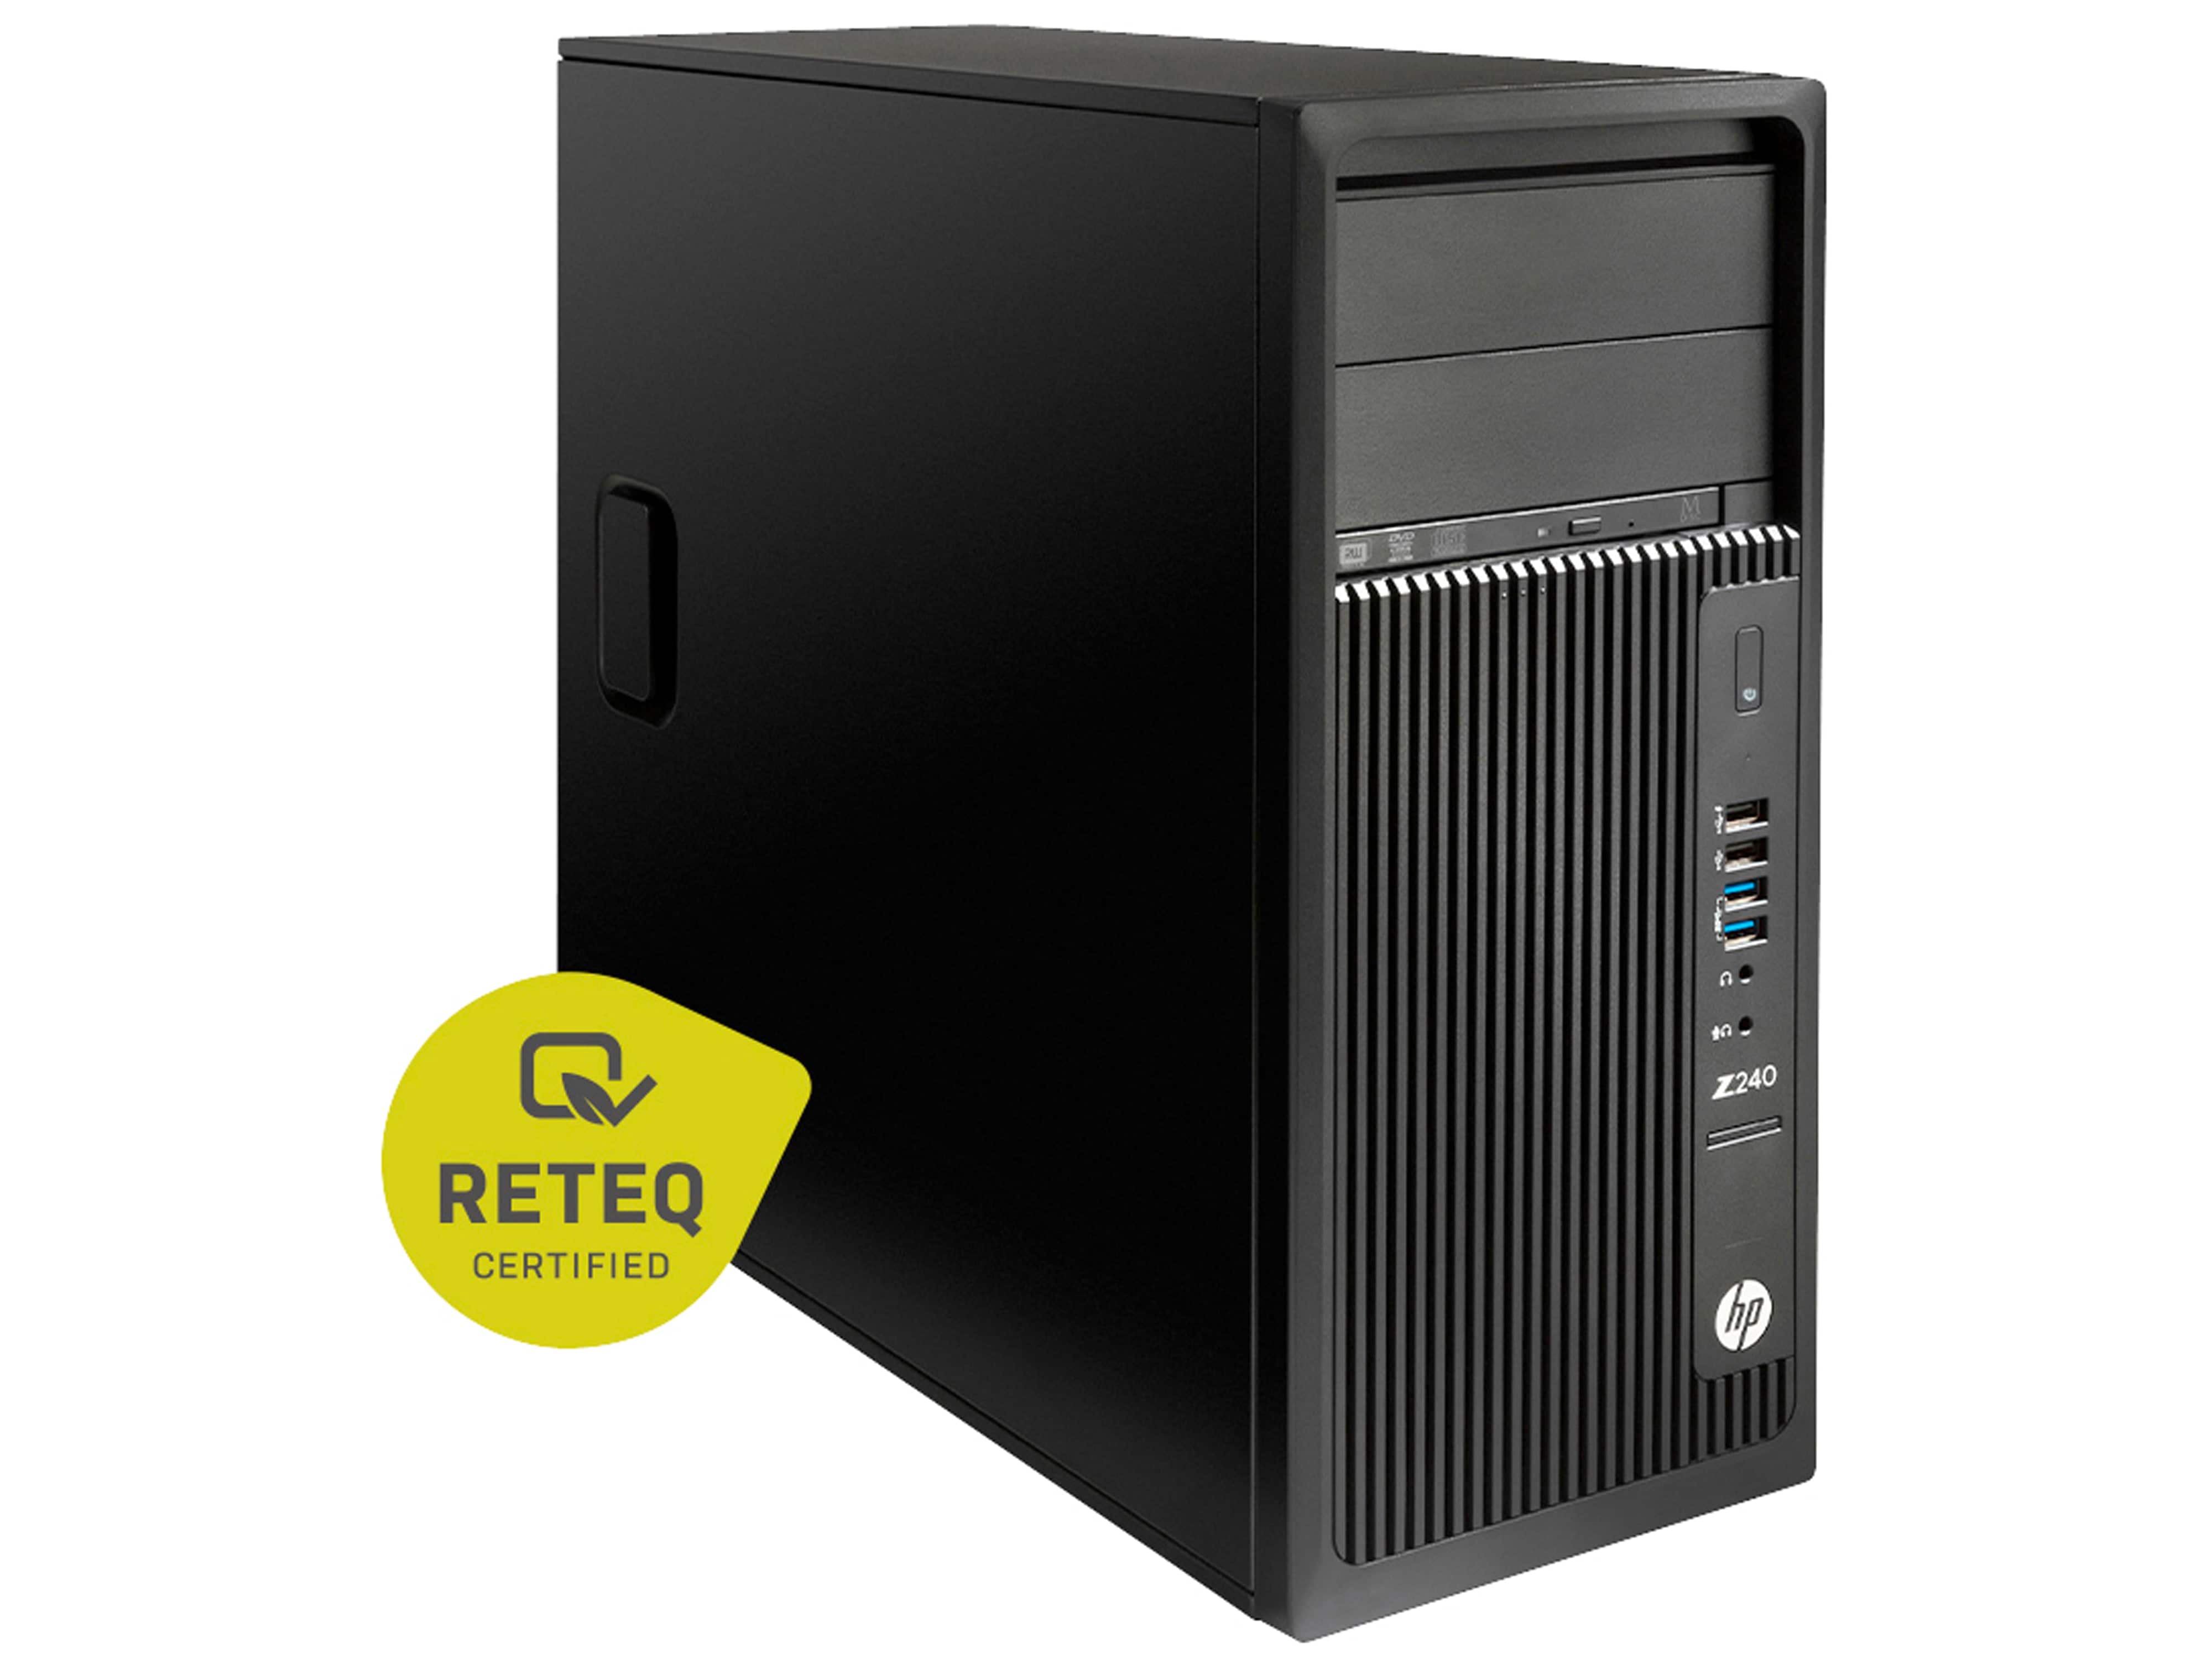 HP PC Workstation Z240, i7, 24GB, 256GB, 2TB, Win10Pro, refurbished